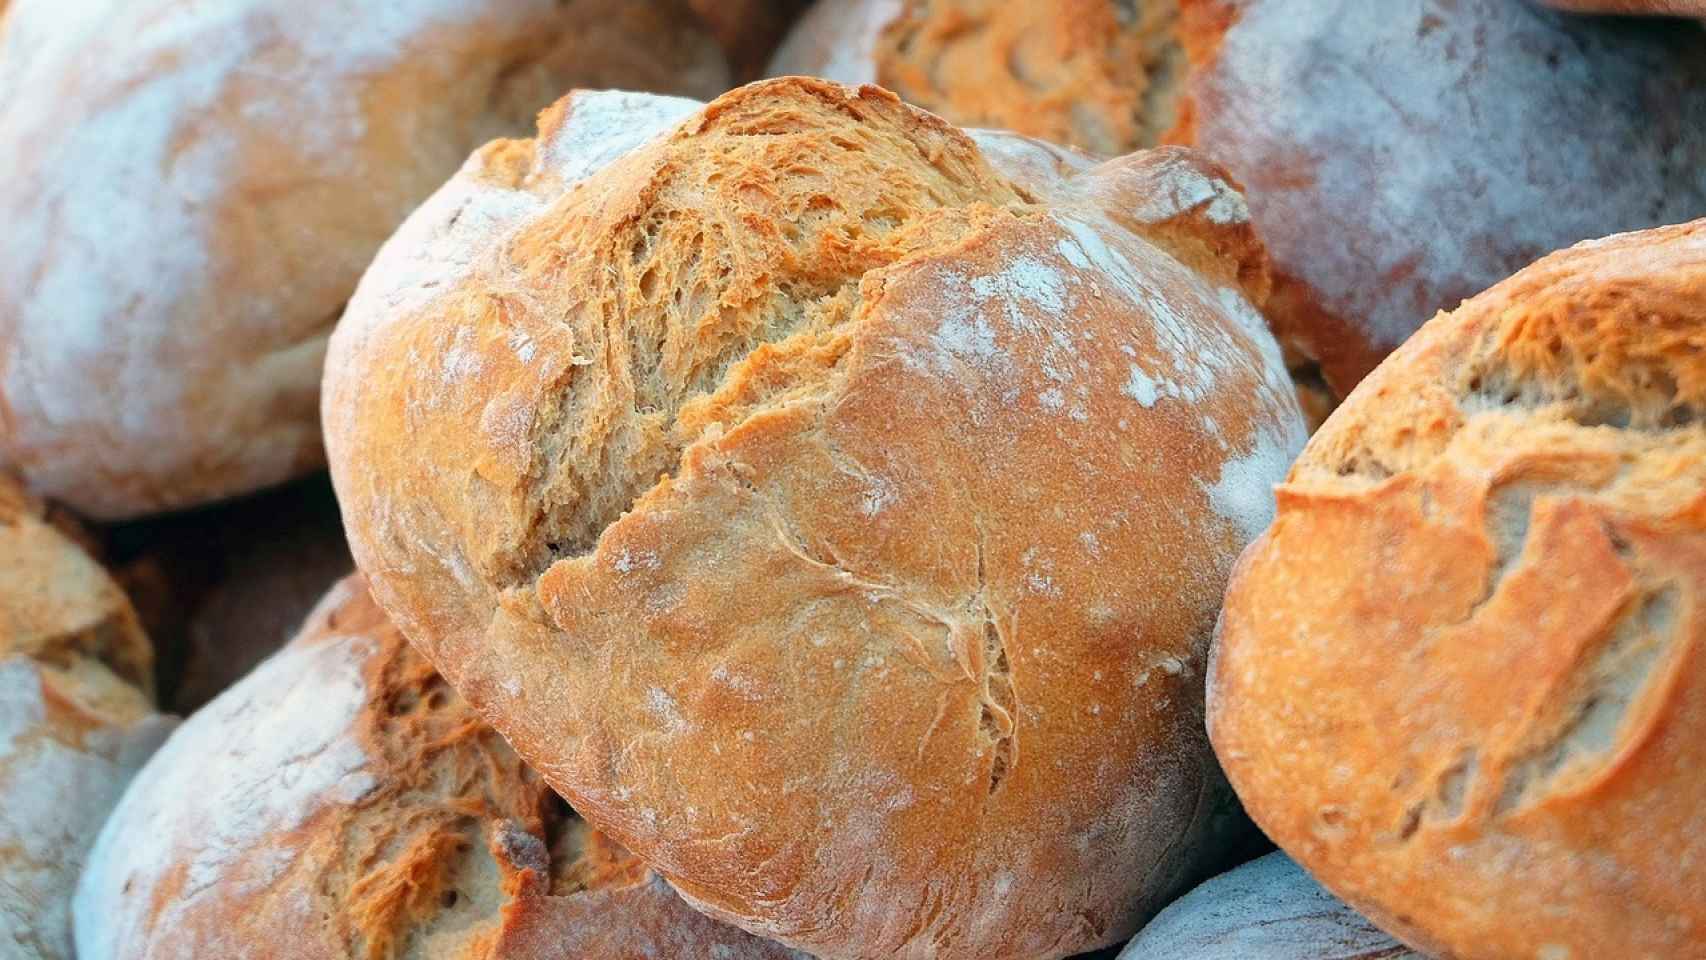 Una de las variedades de pan blanco que se puede encontrar en las panaderías.